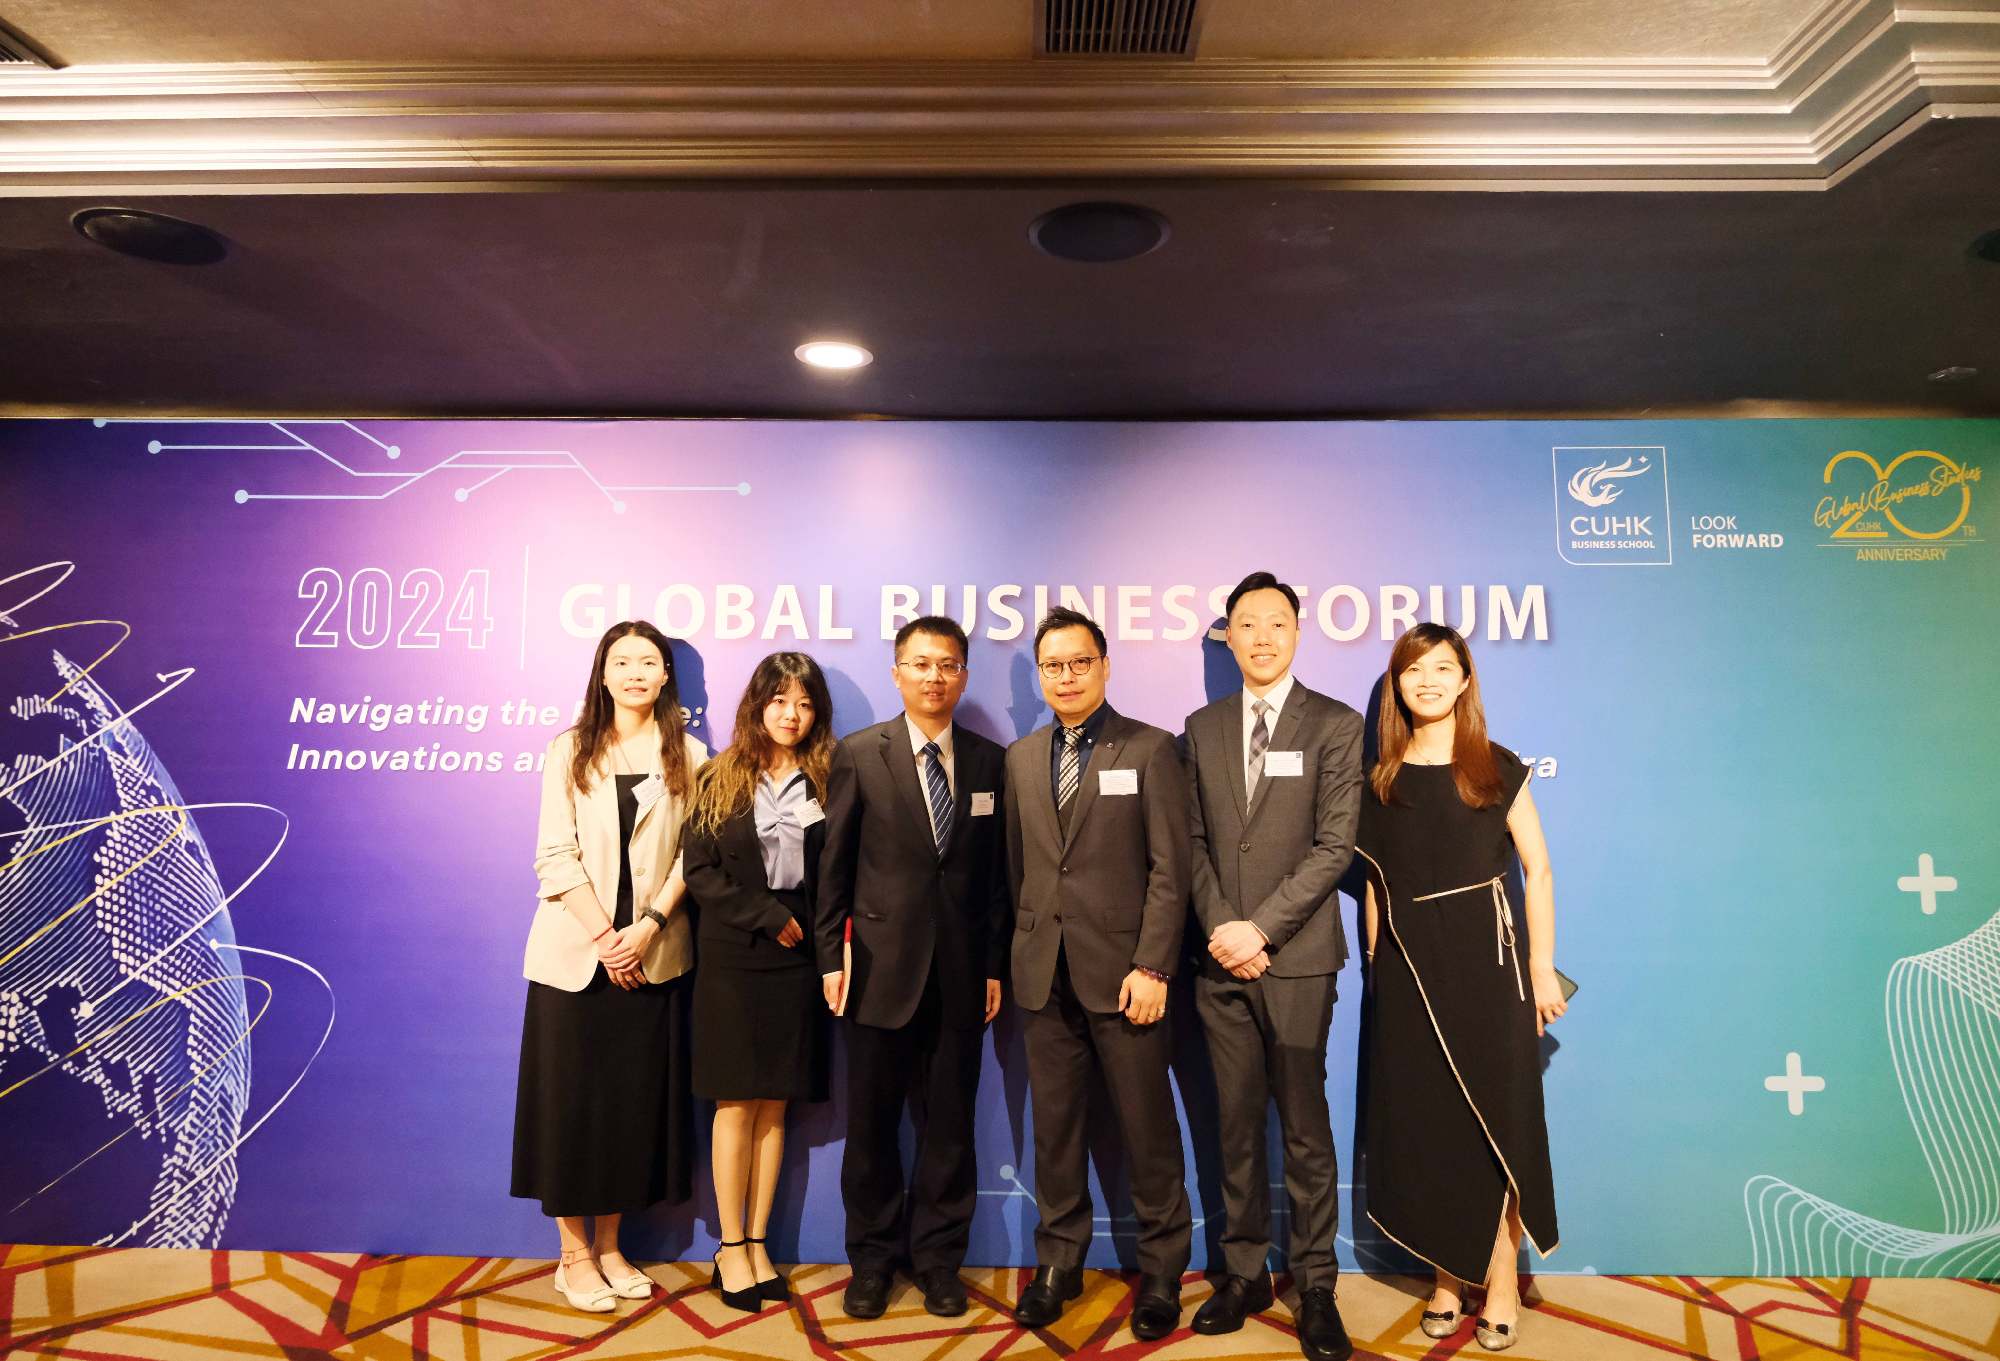 安泰经管学院代表团出席香港中文大学商学院2024全球商业论坛并访问在港知名商学院